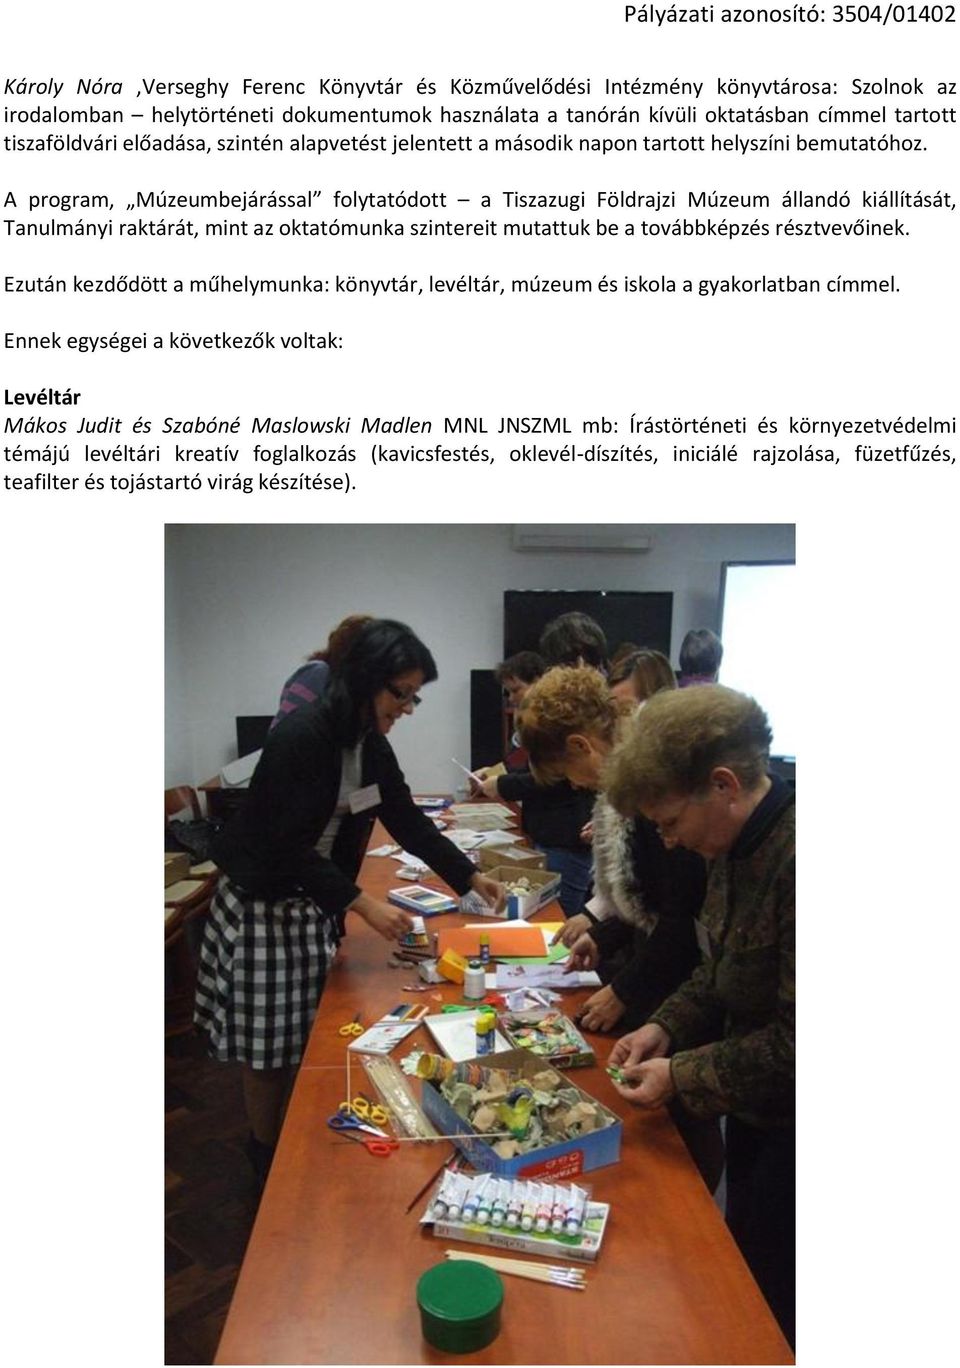 A program, Múzeumbejárással folytatódott a Tiszazugi Földrajzi Múzeum állandó kiállítását, Tanulmányi raktárát, mint az oktatómunka szintereit mutattuk be a továbbképzés résztvevőinek.